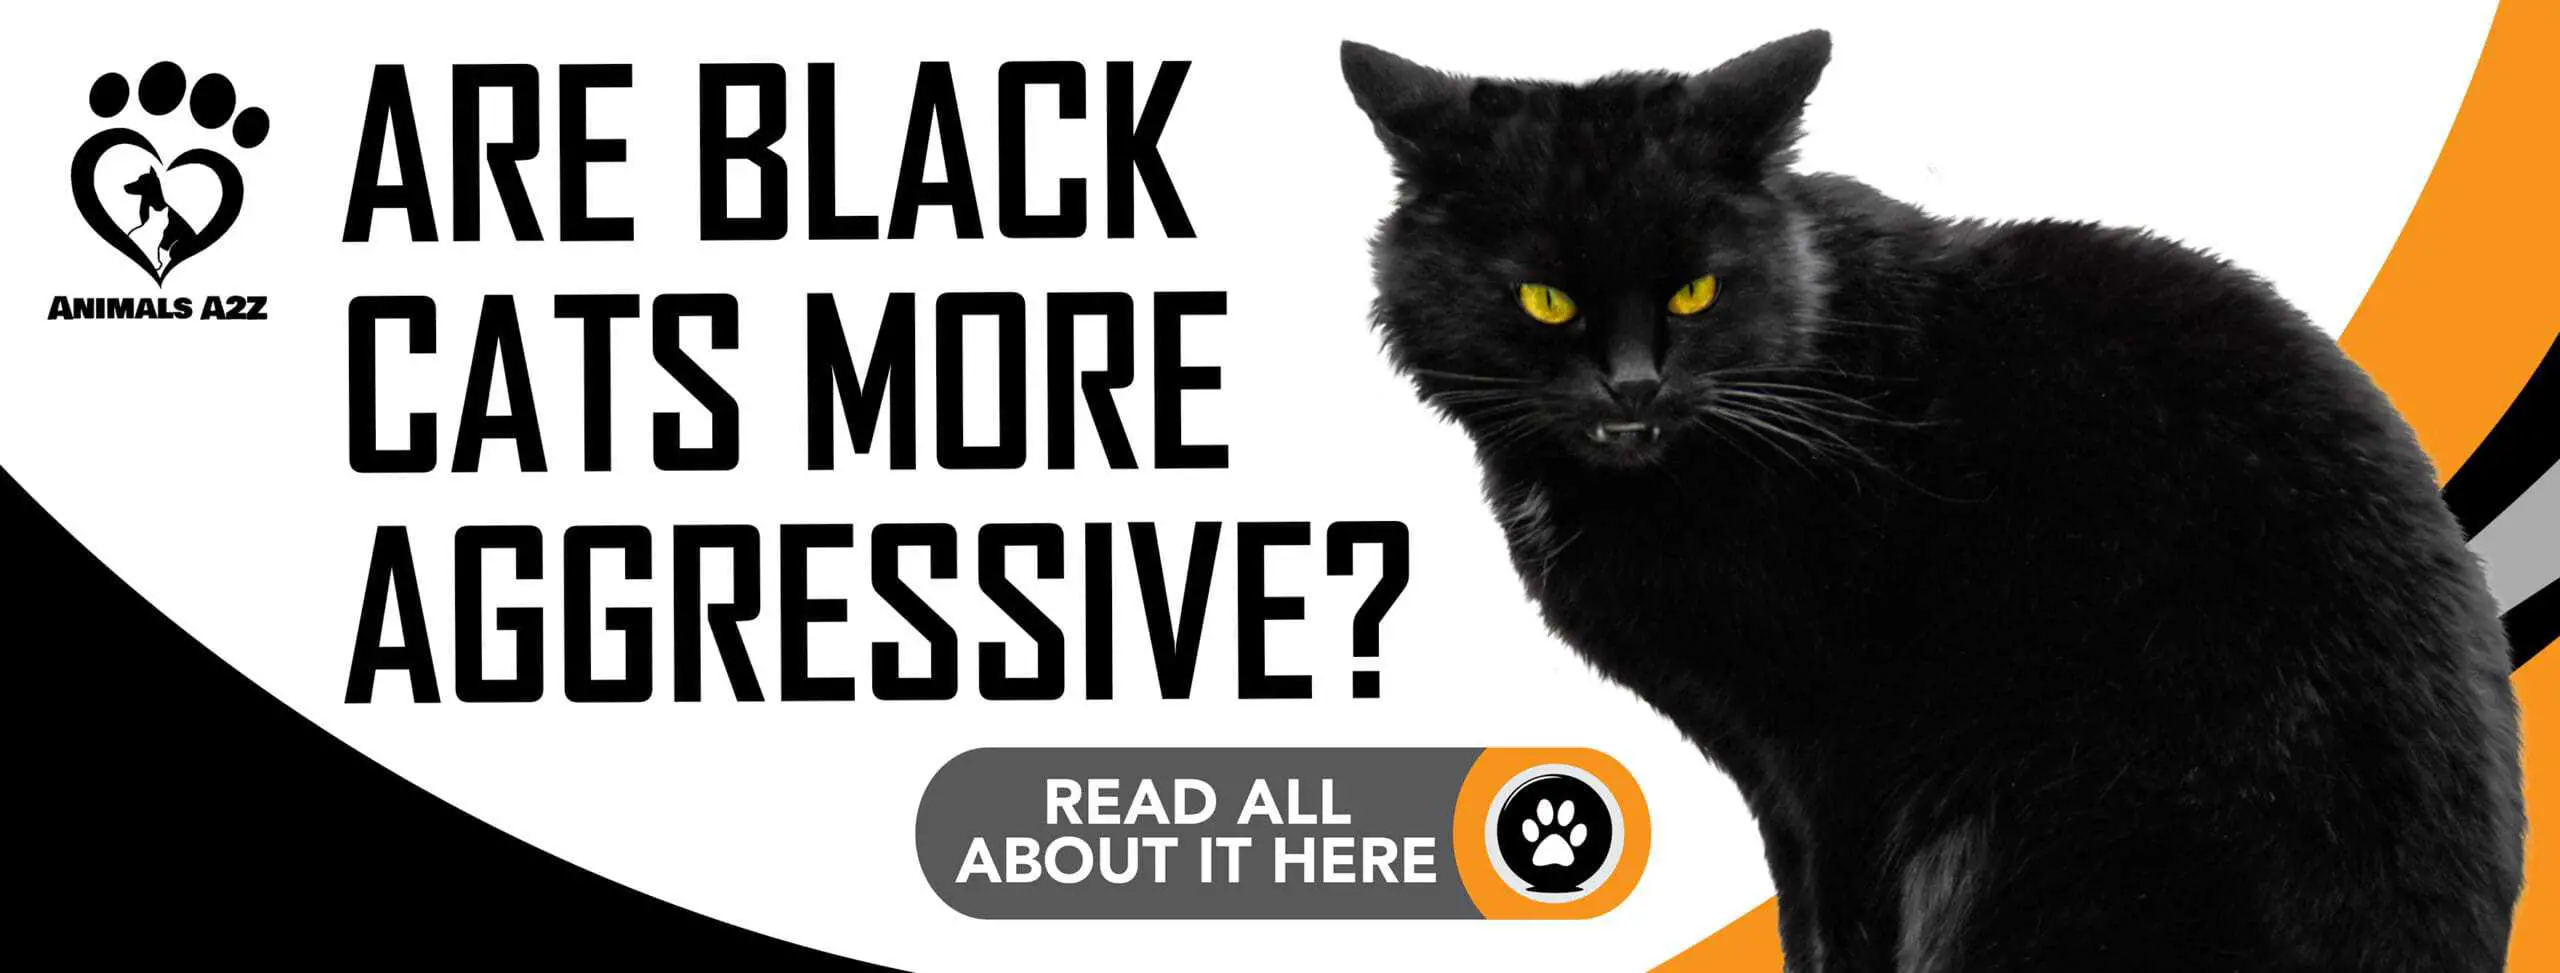 Er sorte katte mere aggressive